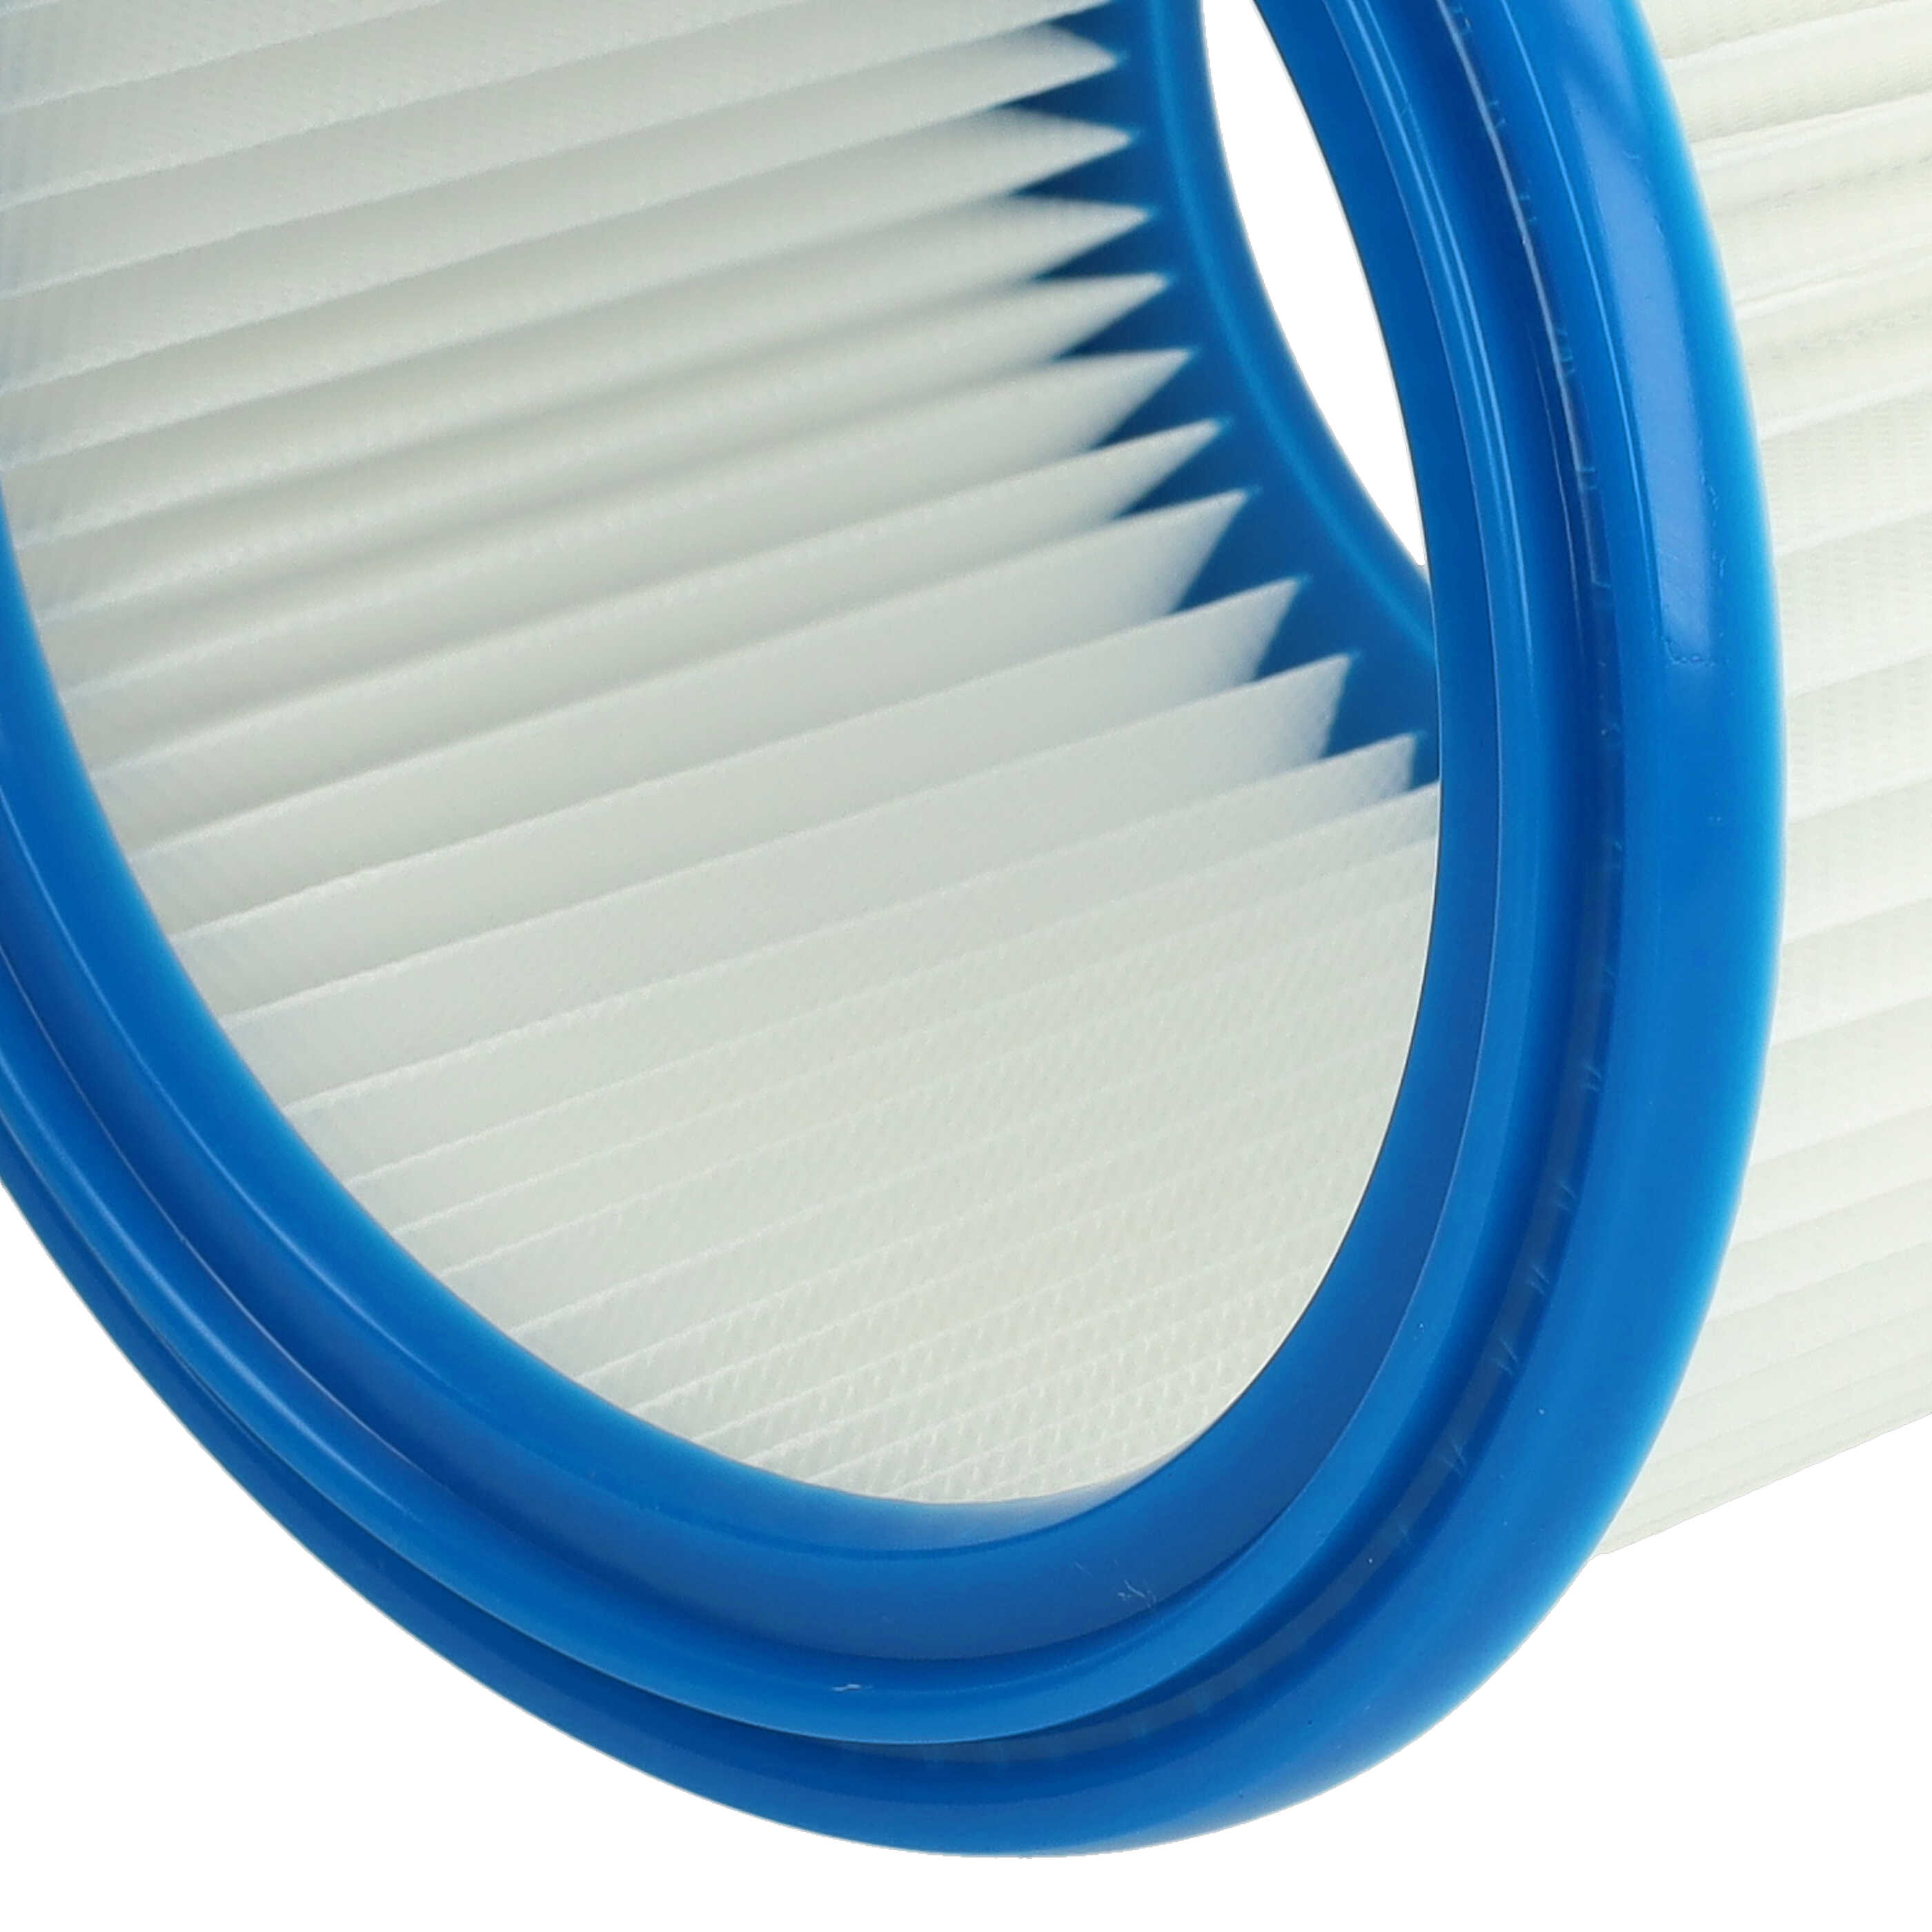 2x Filtro reemplaza Bosch 2607432024 para aspiradora - filtro redondo, blanco / azul